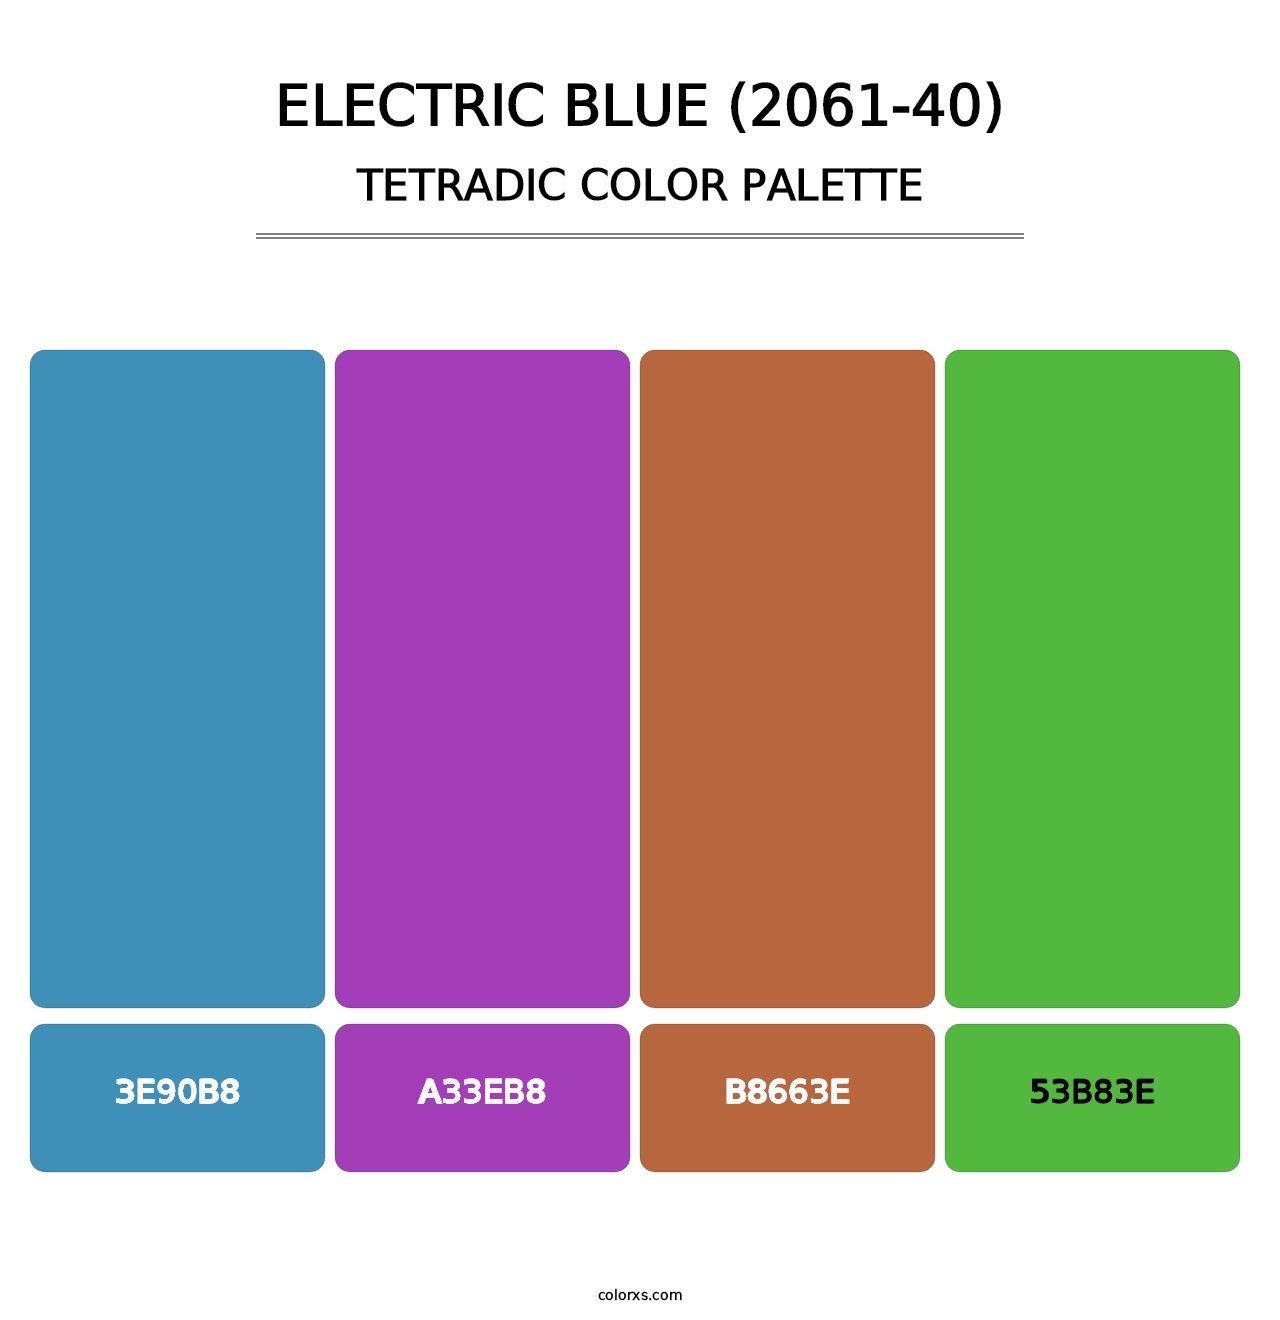 Electric Blue (2061-40) - Tetradic Color Palette